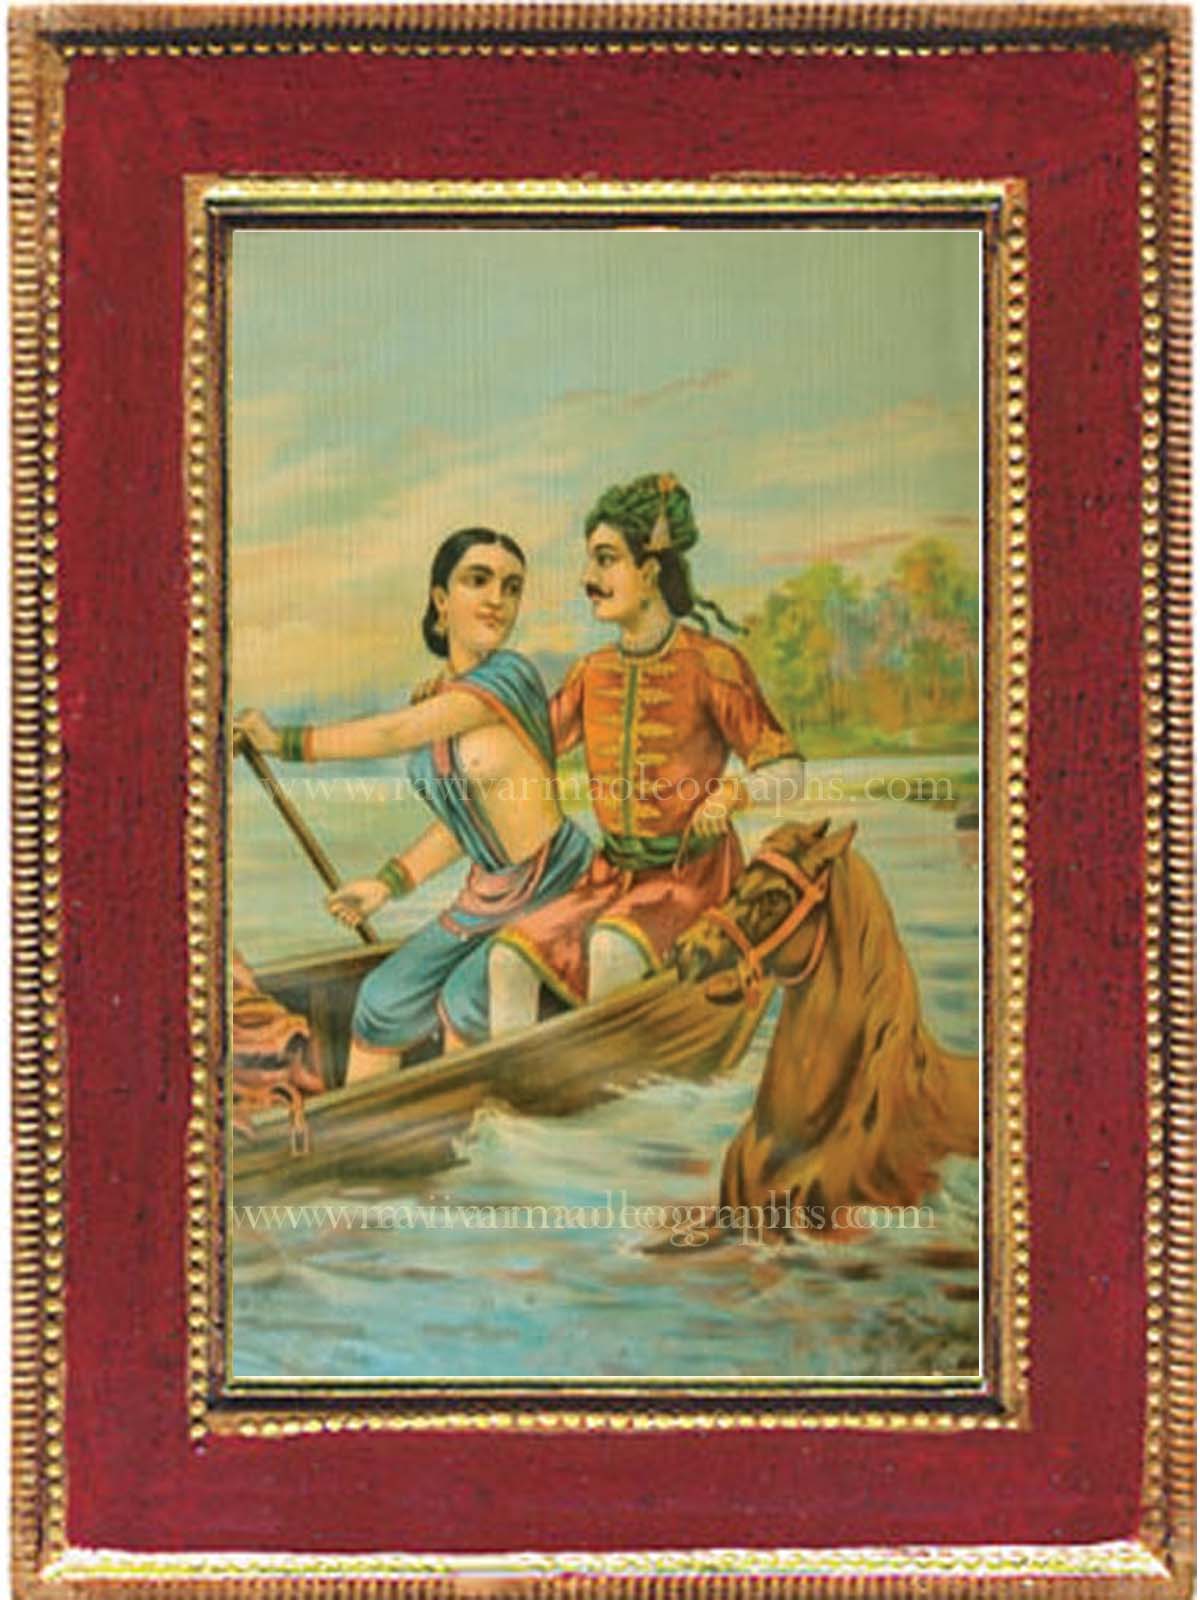 Santhanu Matsyagandhi